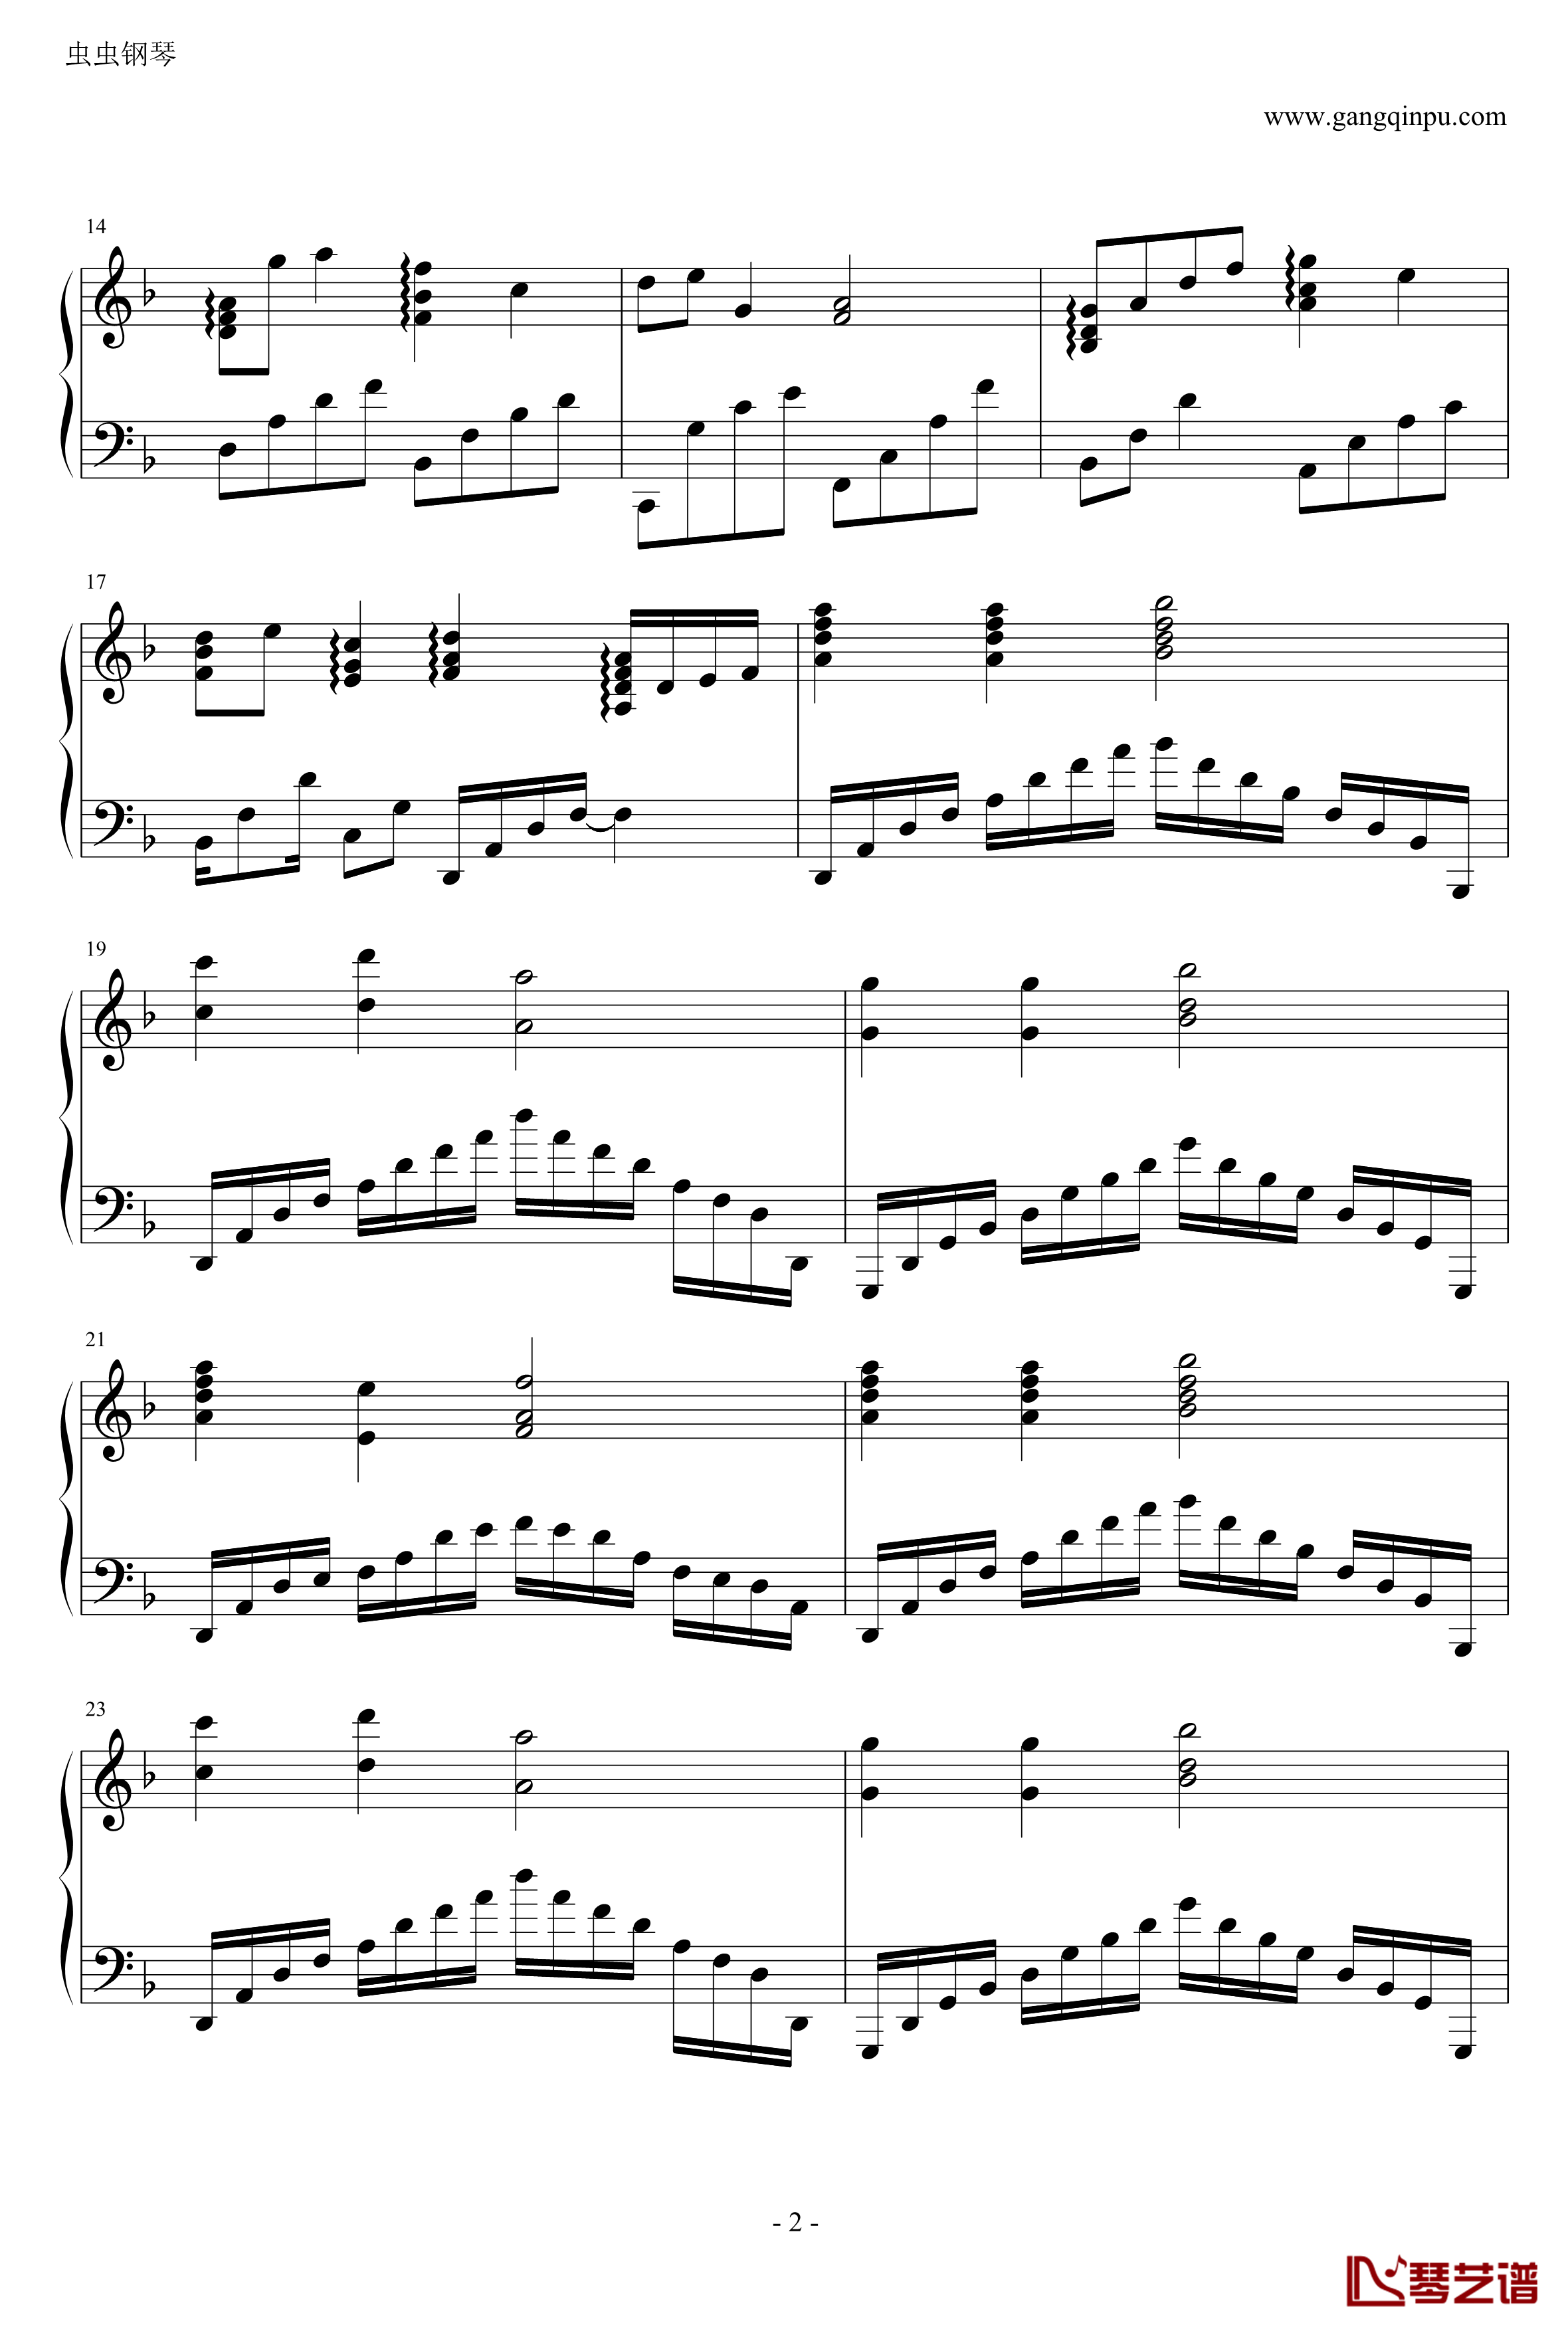 宿命钢琴谱-独奏钢琴曲-妖精的尾巴2